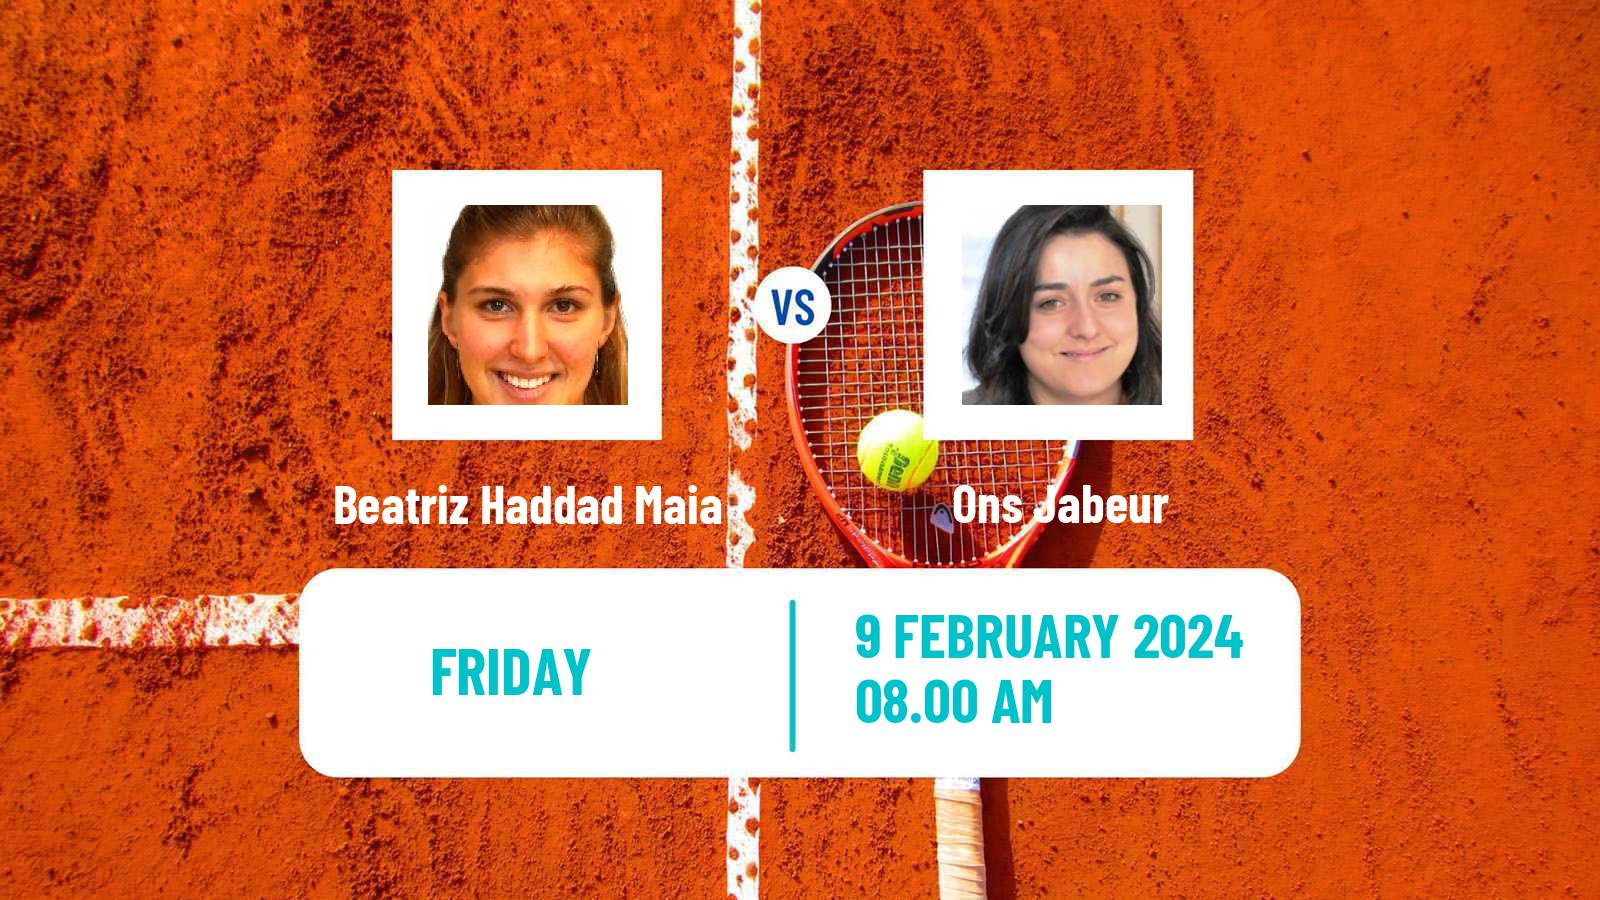 Tennis WTA Abu Dhabi Beatriz Haddad Maia - Ons Jabeur